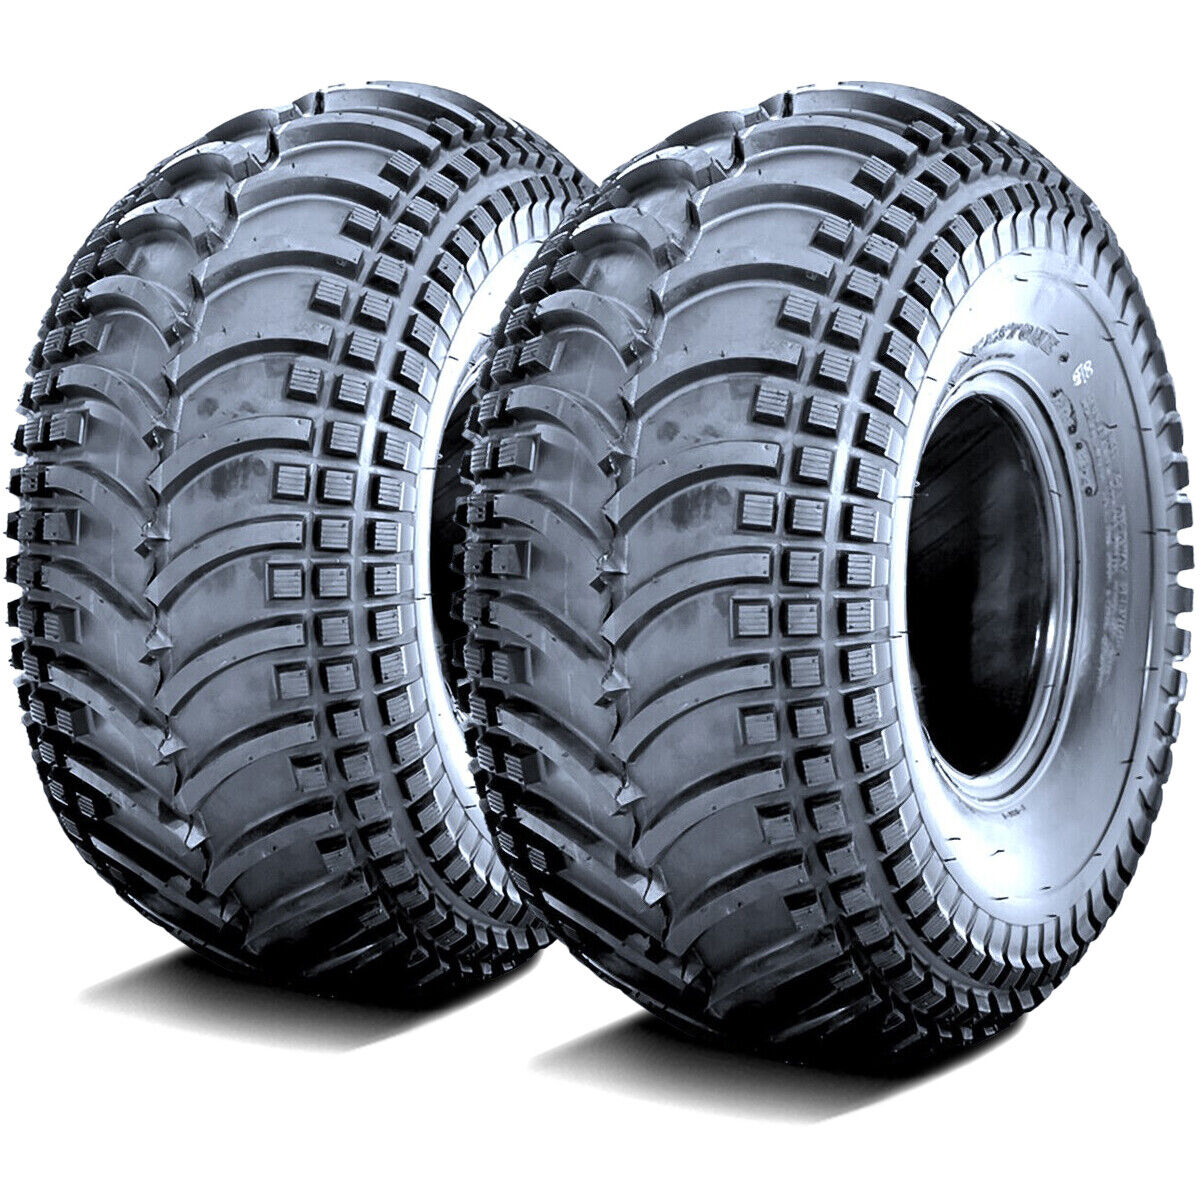 2 Tires Deestone D930 22x11.00-8 22x11-8 22x11x8 43F 4 Ply MT M/T Mud ATV UTV